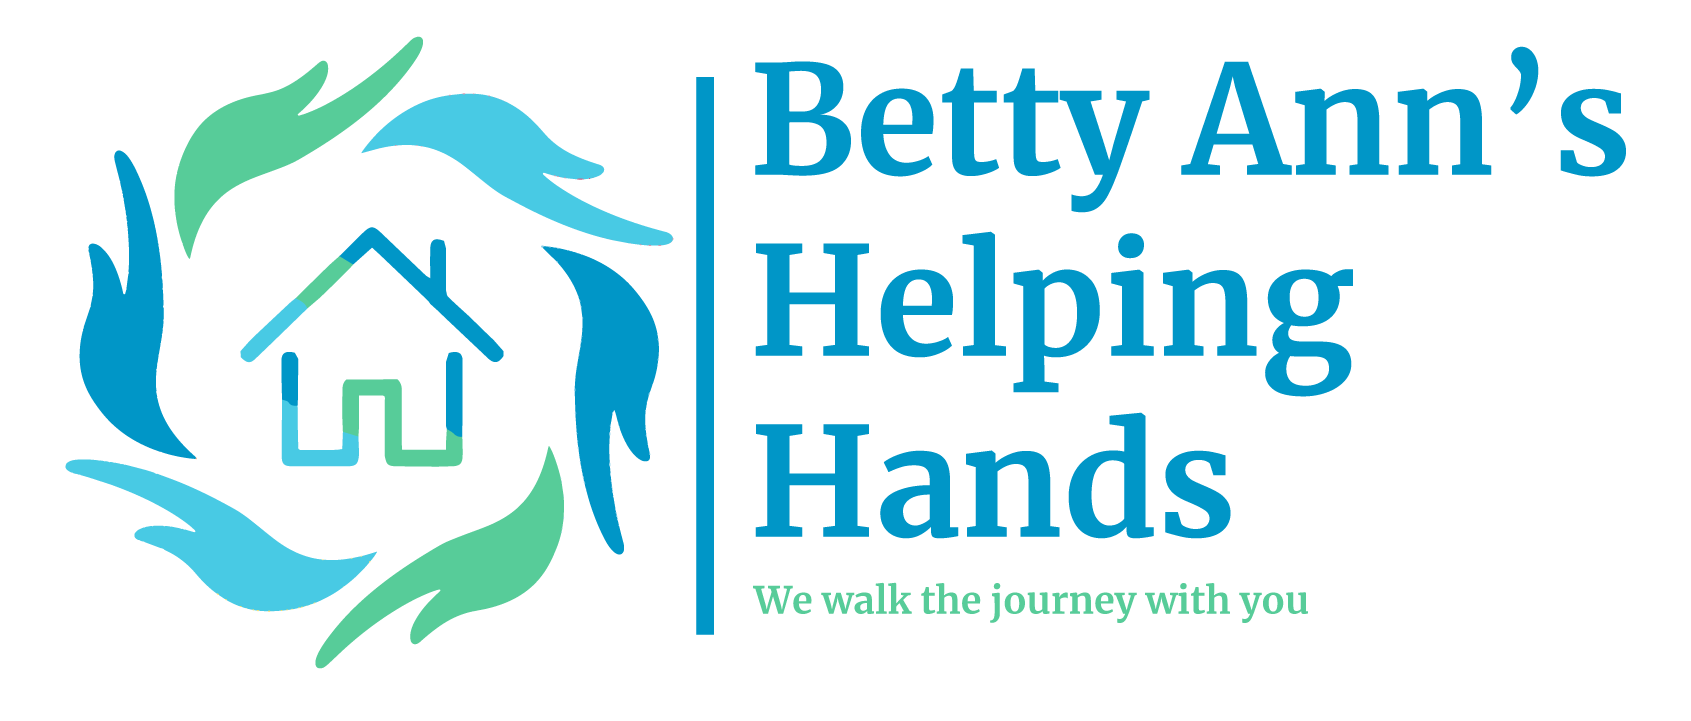 Betty Ann's Helping Hands